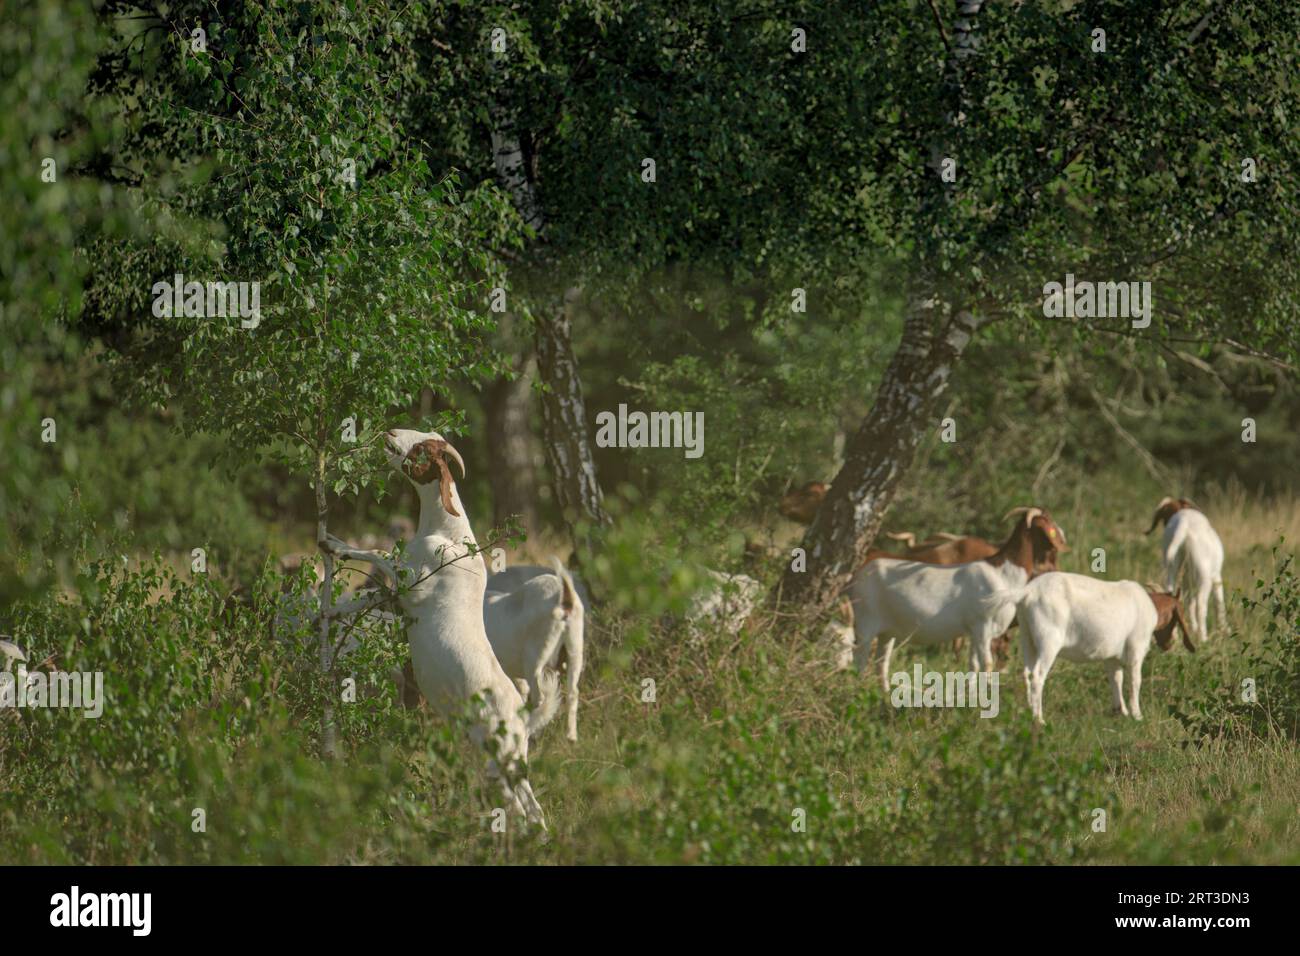 Chèvre debout grignotant quelques feuilles de l'arbre avec d'autres chèvres en arrière-plan dans la lumière du soleil du matin dans la réserve naturelle de Höltigbaum, Allemagne Banque D'Images